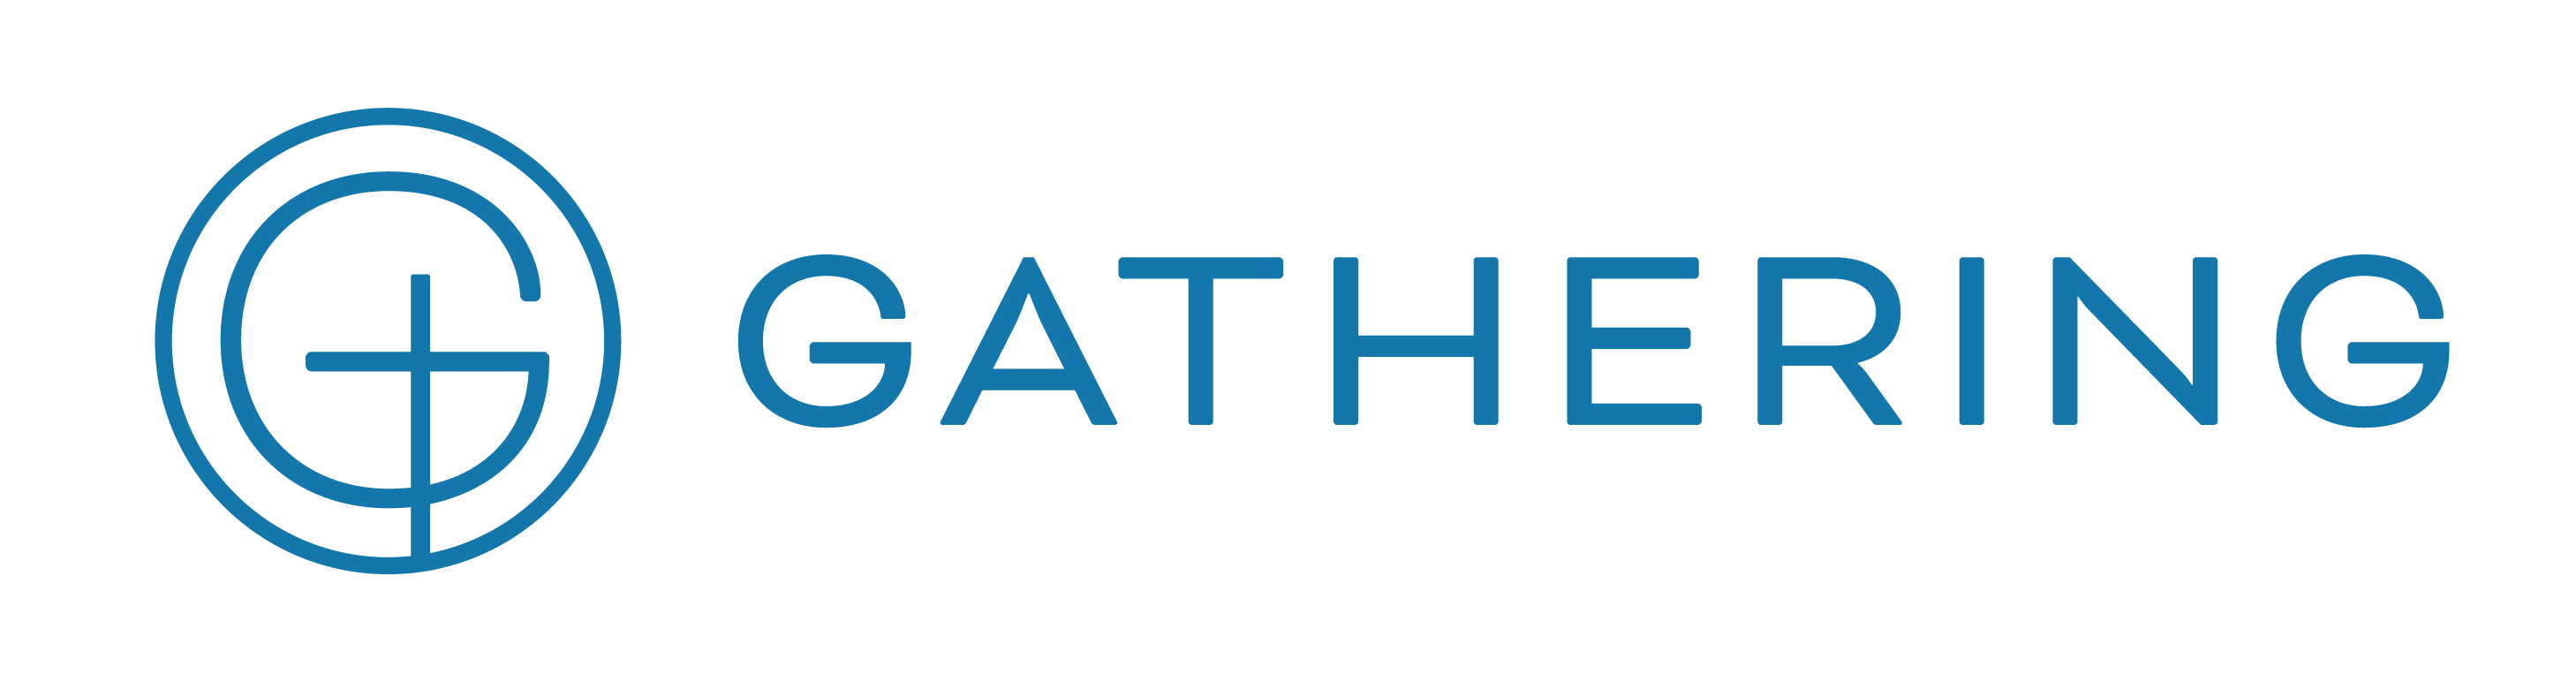 Gathering-Logo-Horizontal